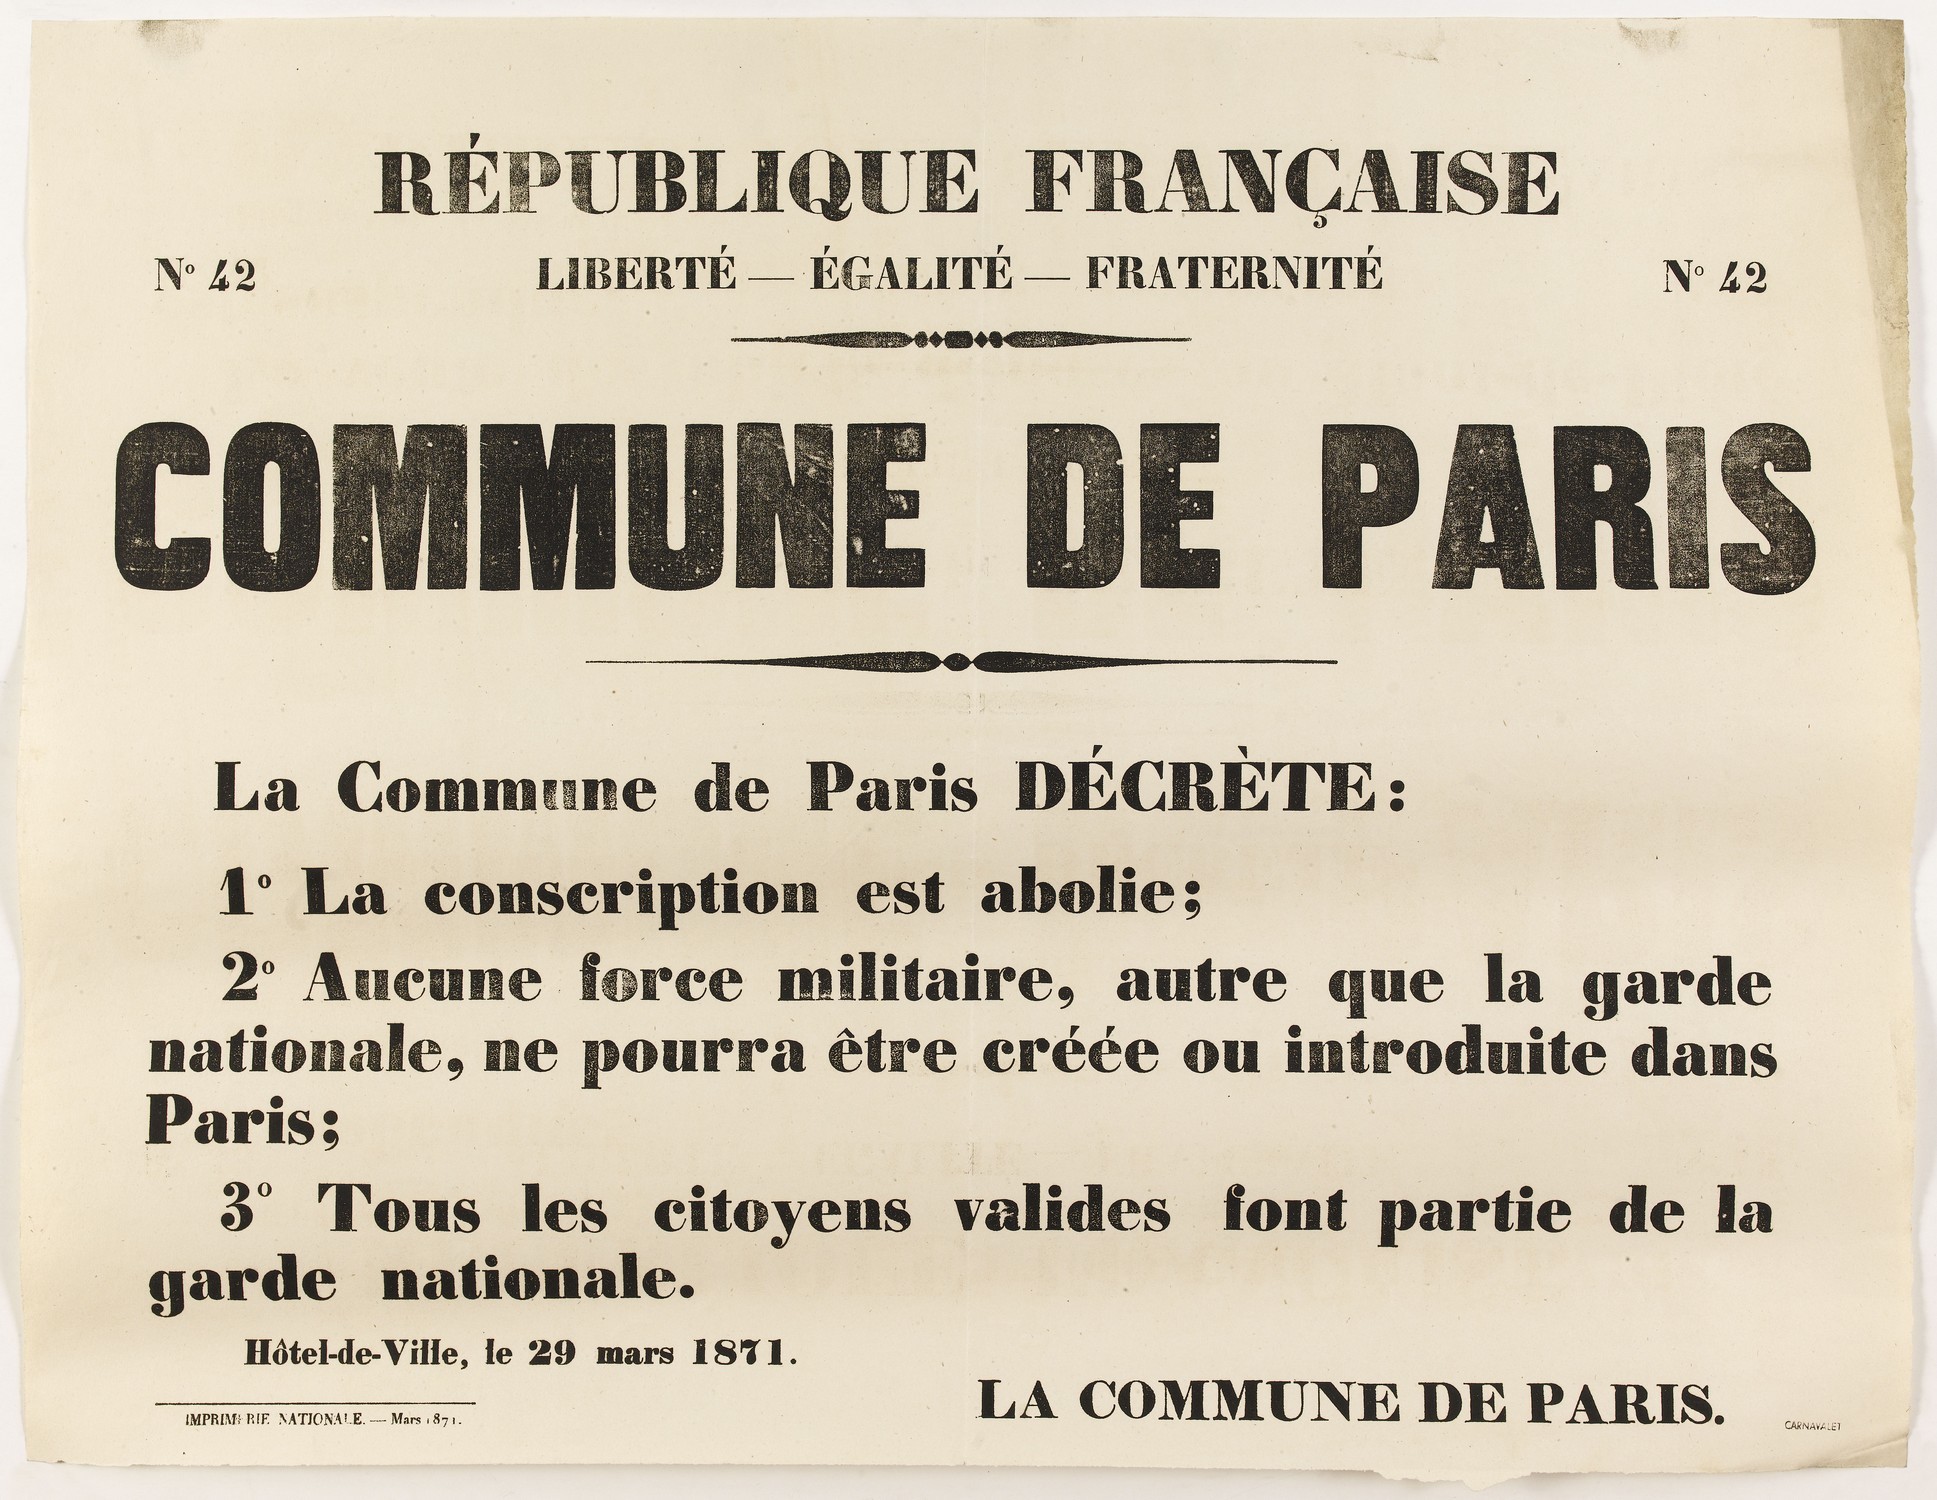 Affiche de la Commune N° 42 du 29 mars 1871 - Abolition de la conscription